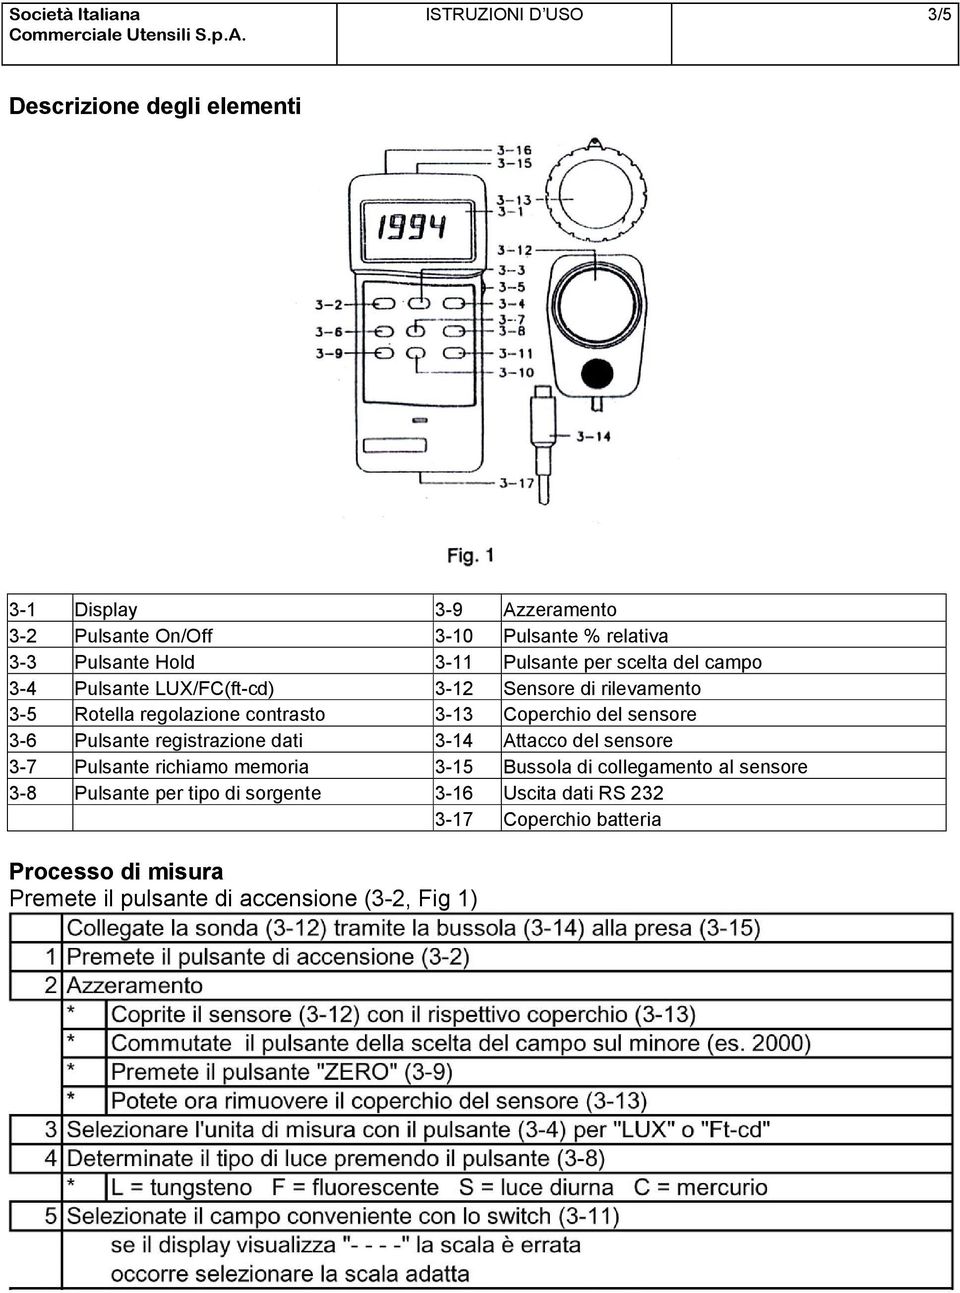 del sensore 3-6 Pulsante registrazione dati 3-14 Attacco del sensore 3-7 Pulsante richiamo memoria 3-15 Bussola di collegamento al sensore